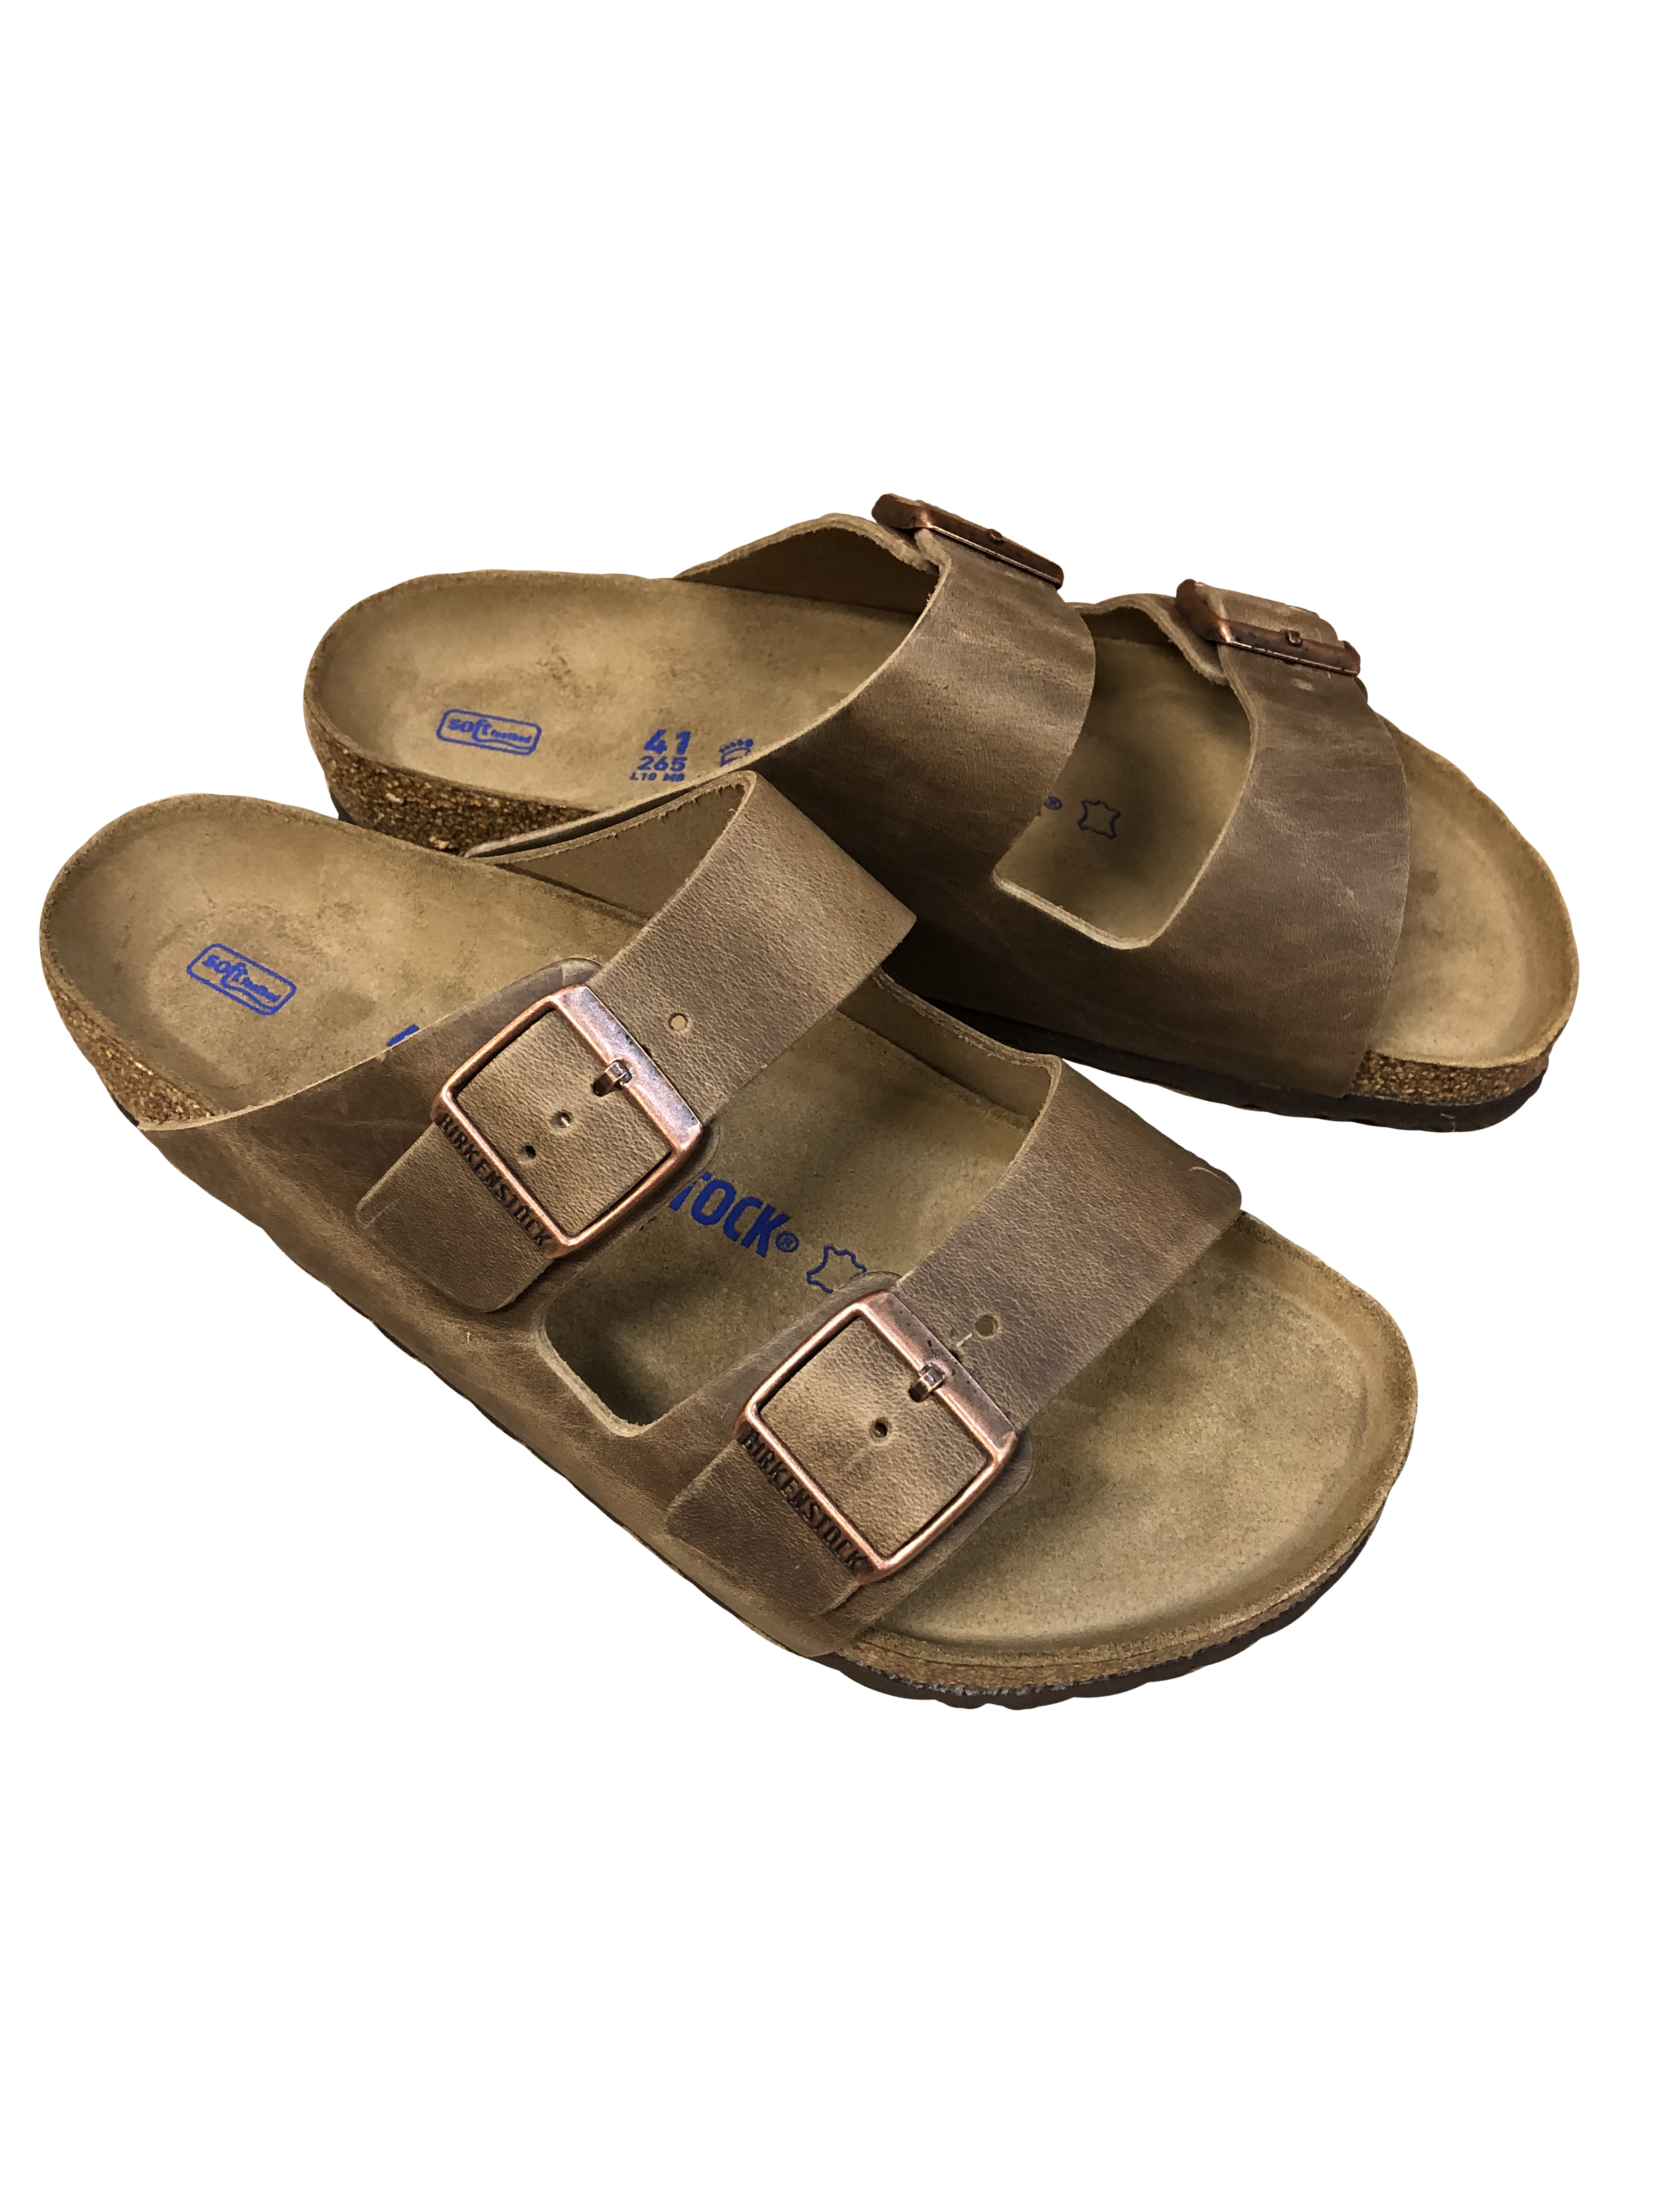 Global Pursuit sandals.png